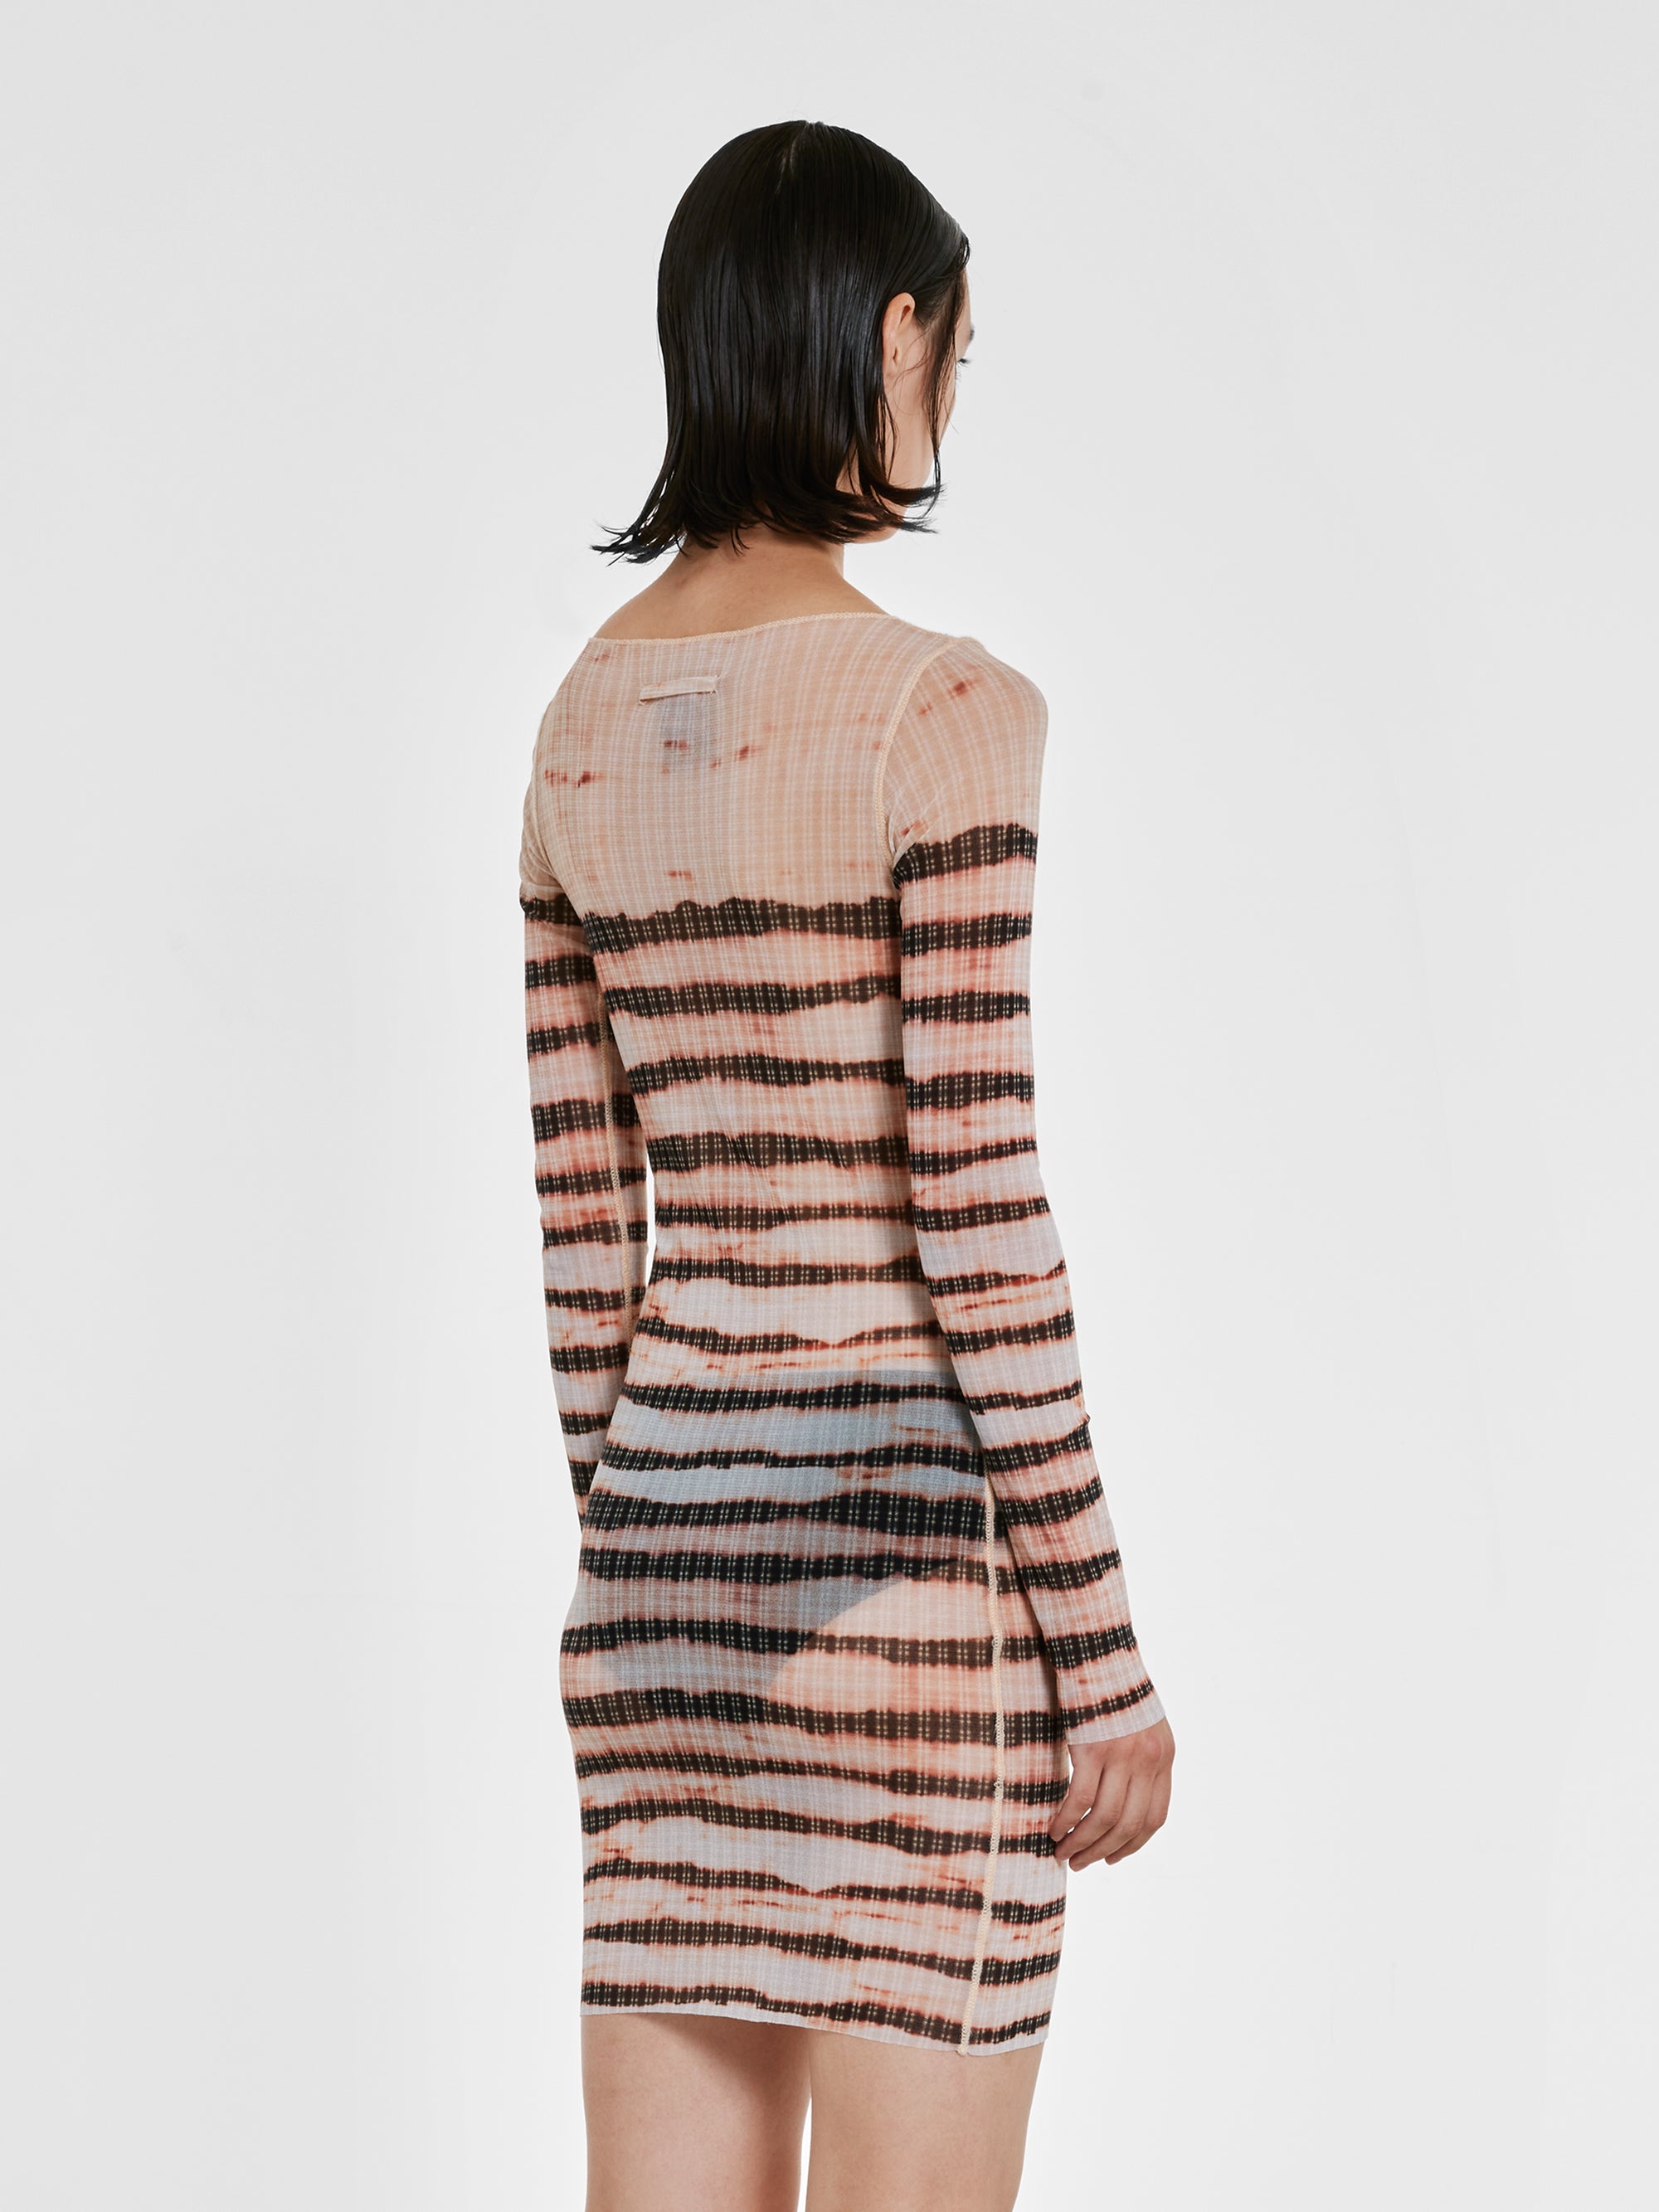 Jean Paul Gaultier - KNWLS Women’s Long Sleeve Striped Dress - (Ecru/Brown) view 4